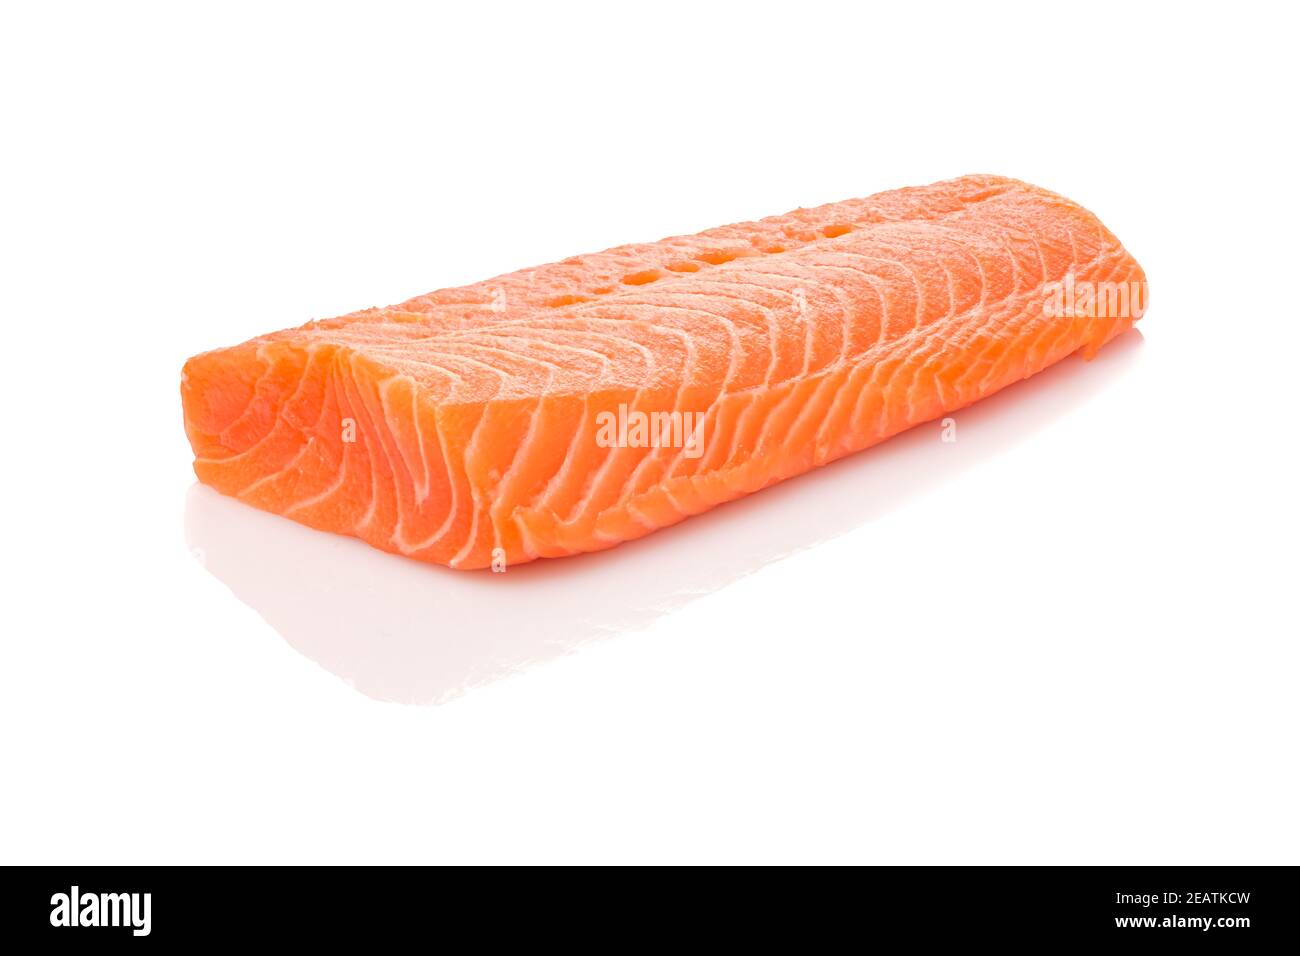 Raw orange Lachs Fisch Filet weiß isoliert Stockfoto